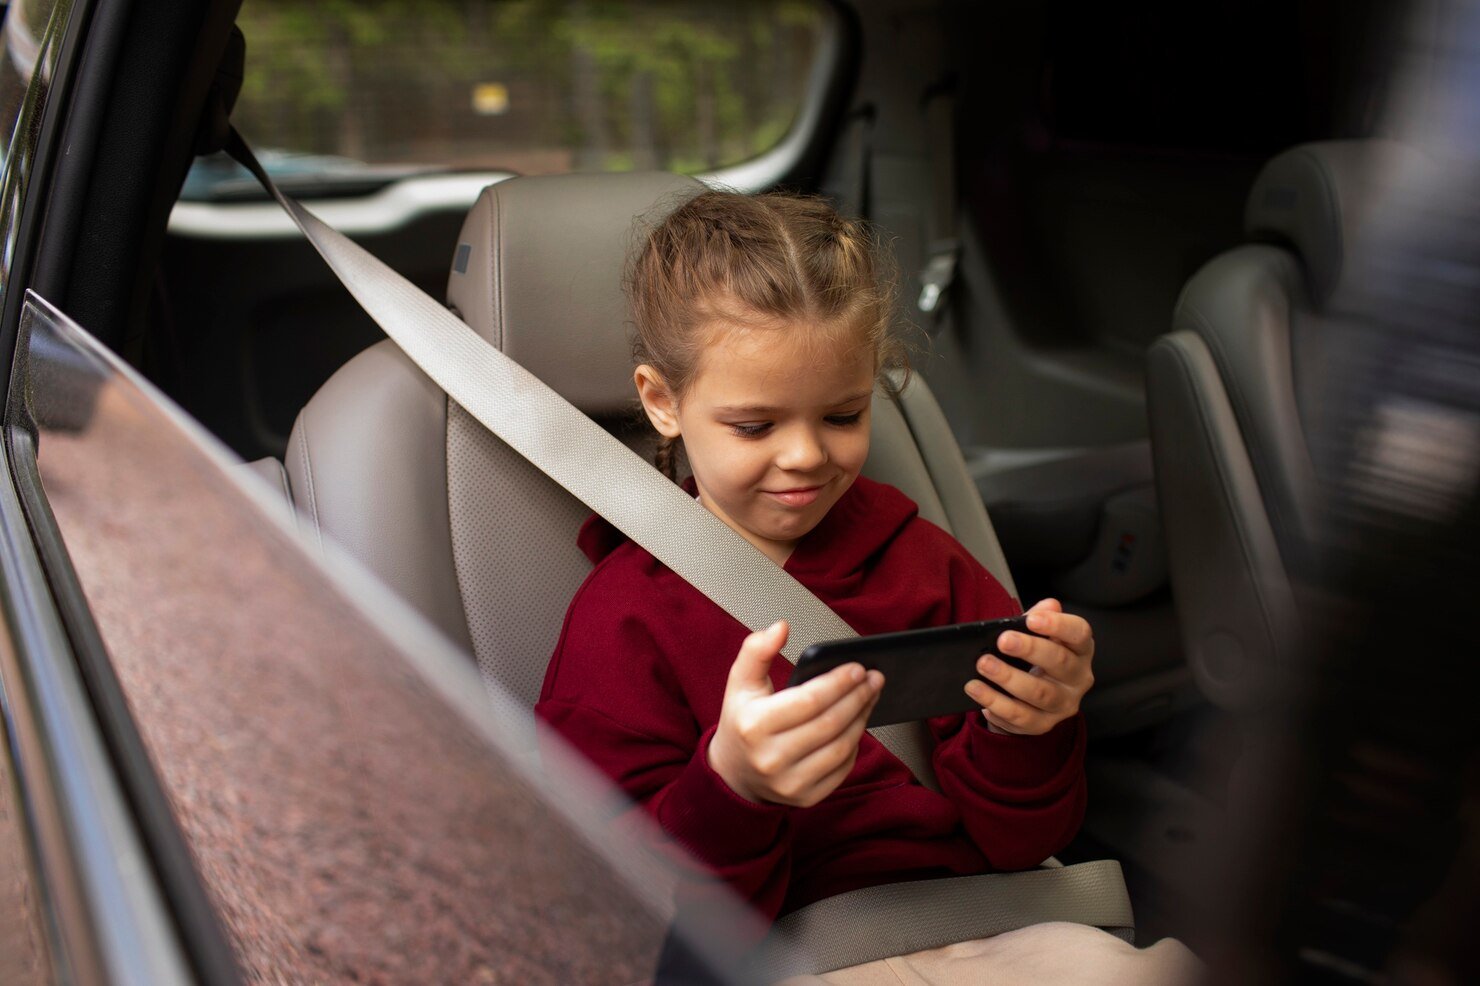 RODIČIA POZOR: Nenechávajte deti v týchto dňoch vo vozidle!